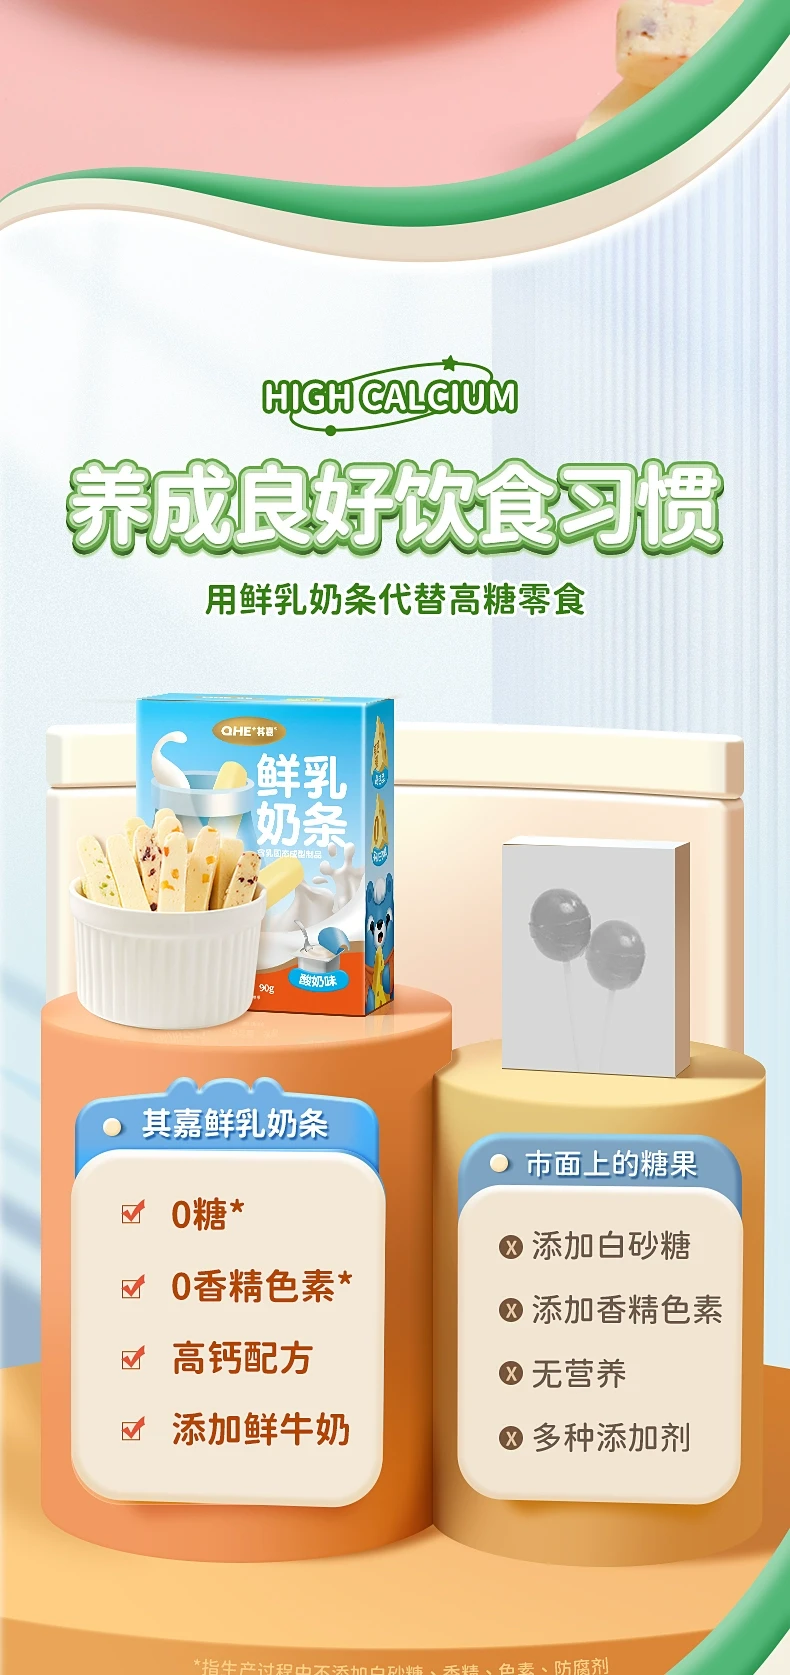 中国 其嘉 小奶花鲜乳奶条 90克 酸奶味 无添加蔗糖高钙芝士奶酪奶棒 口口香浓 吃得到的真果粒